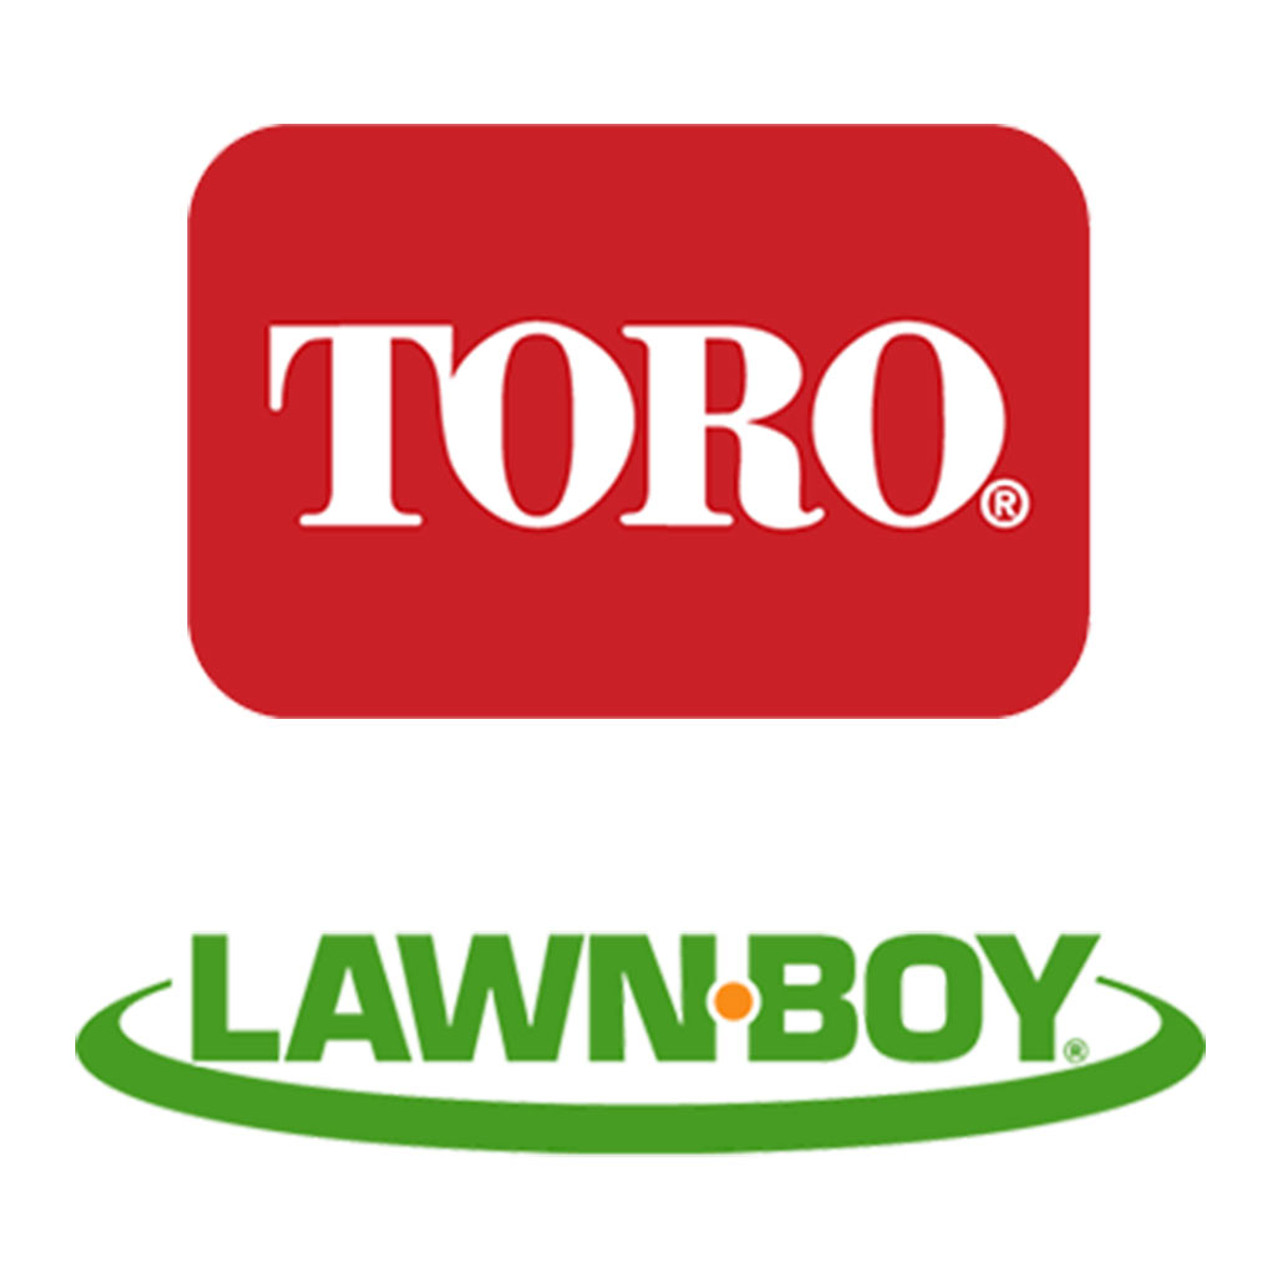 Toro Lawn-Boy 237-84 Grommet